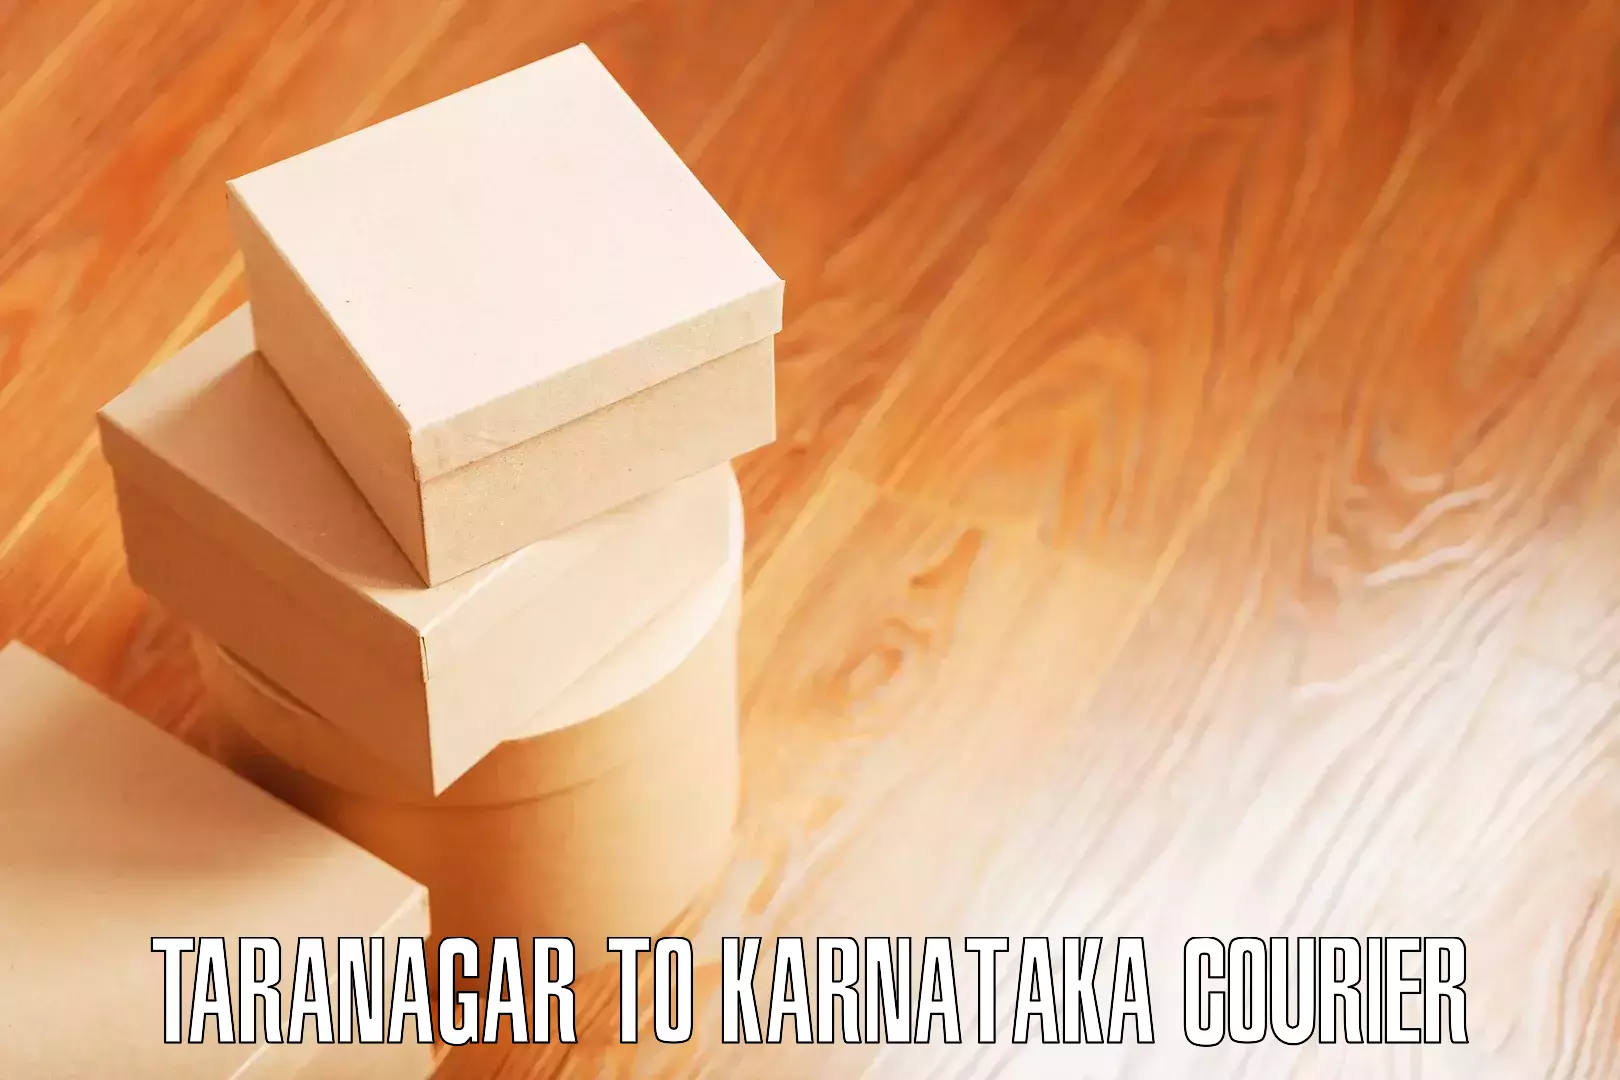 Packing and moving services Taranagar to Nanjangud